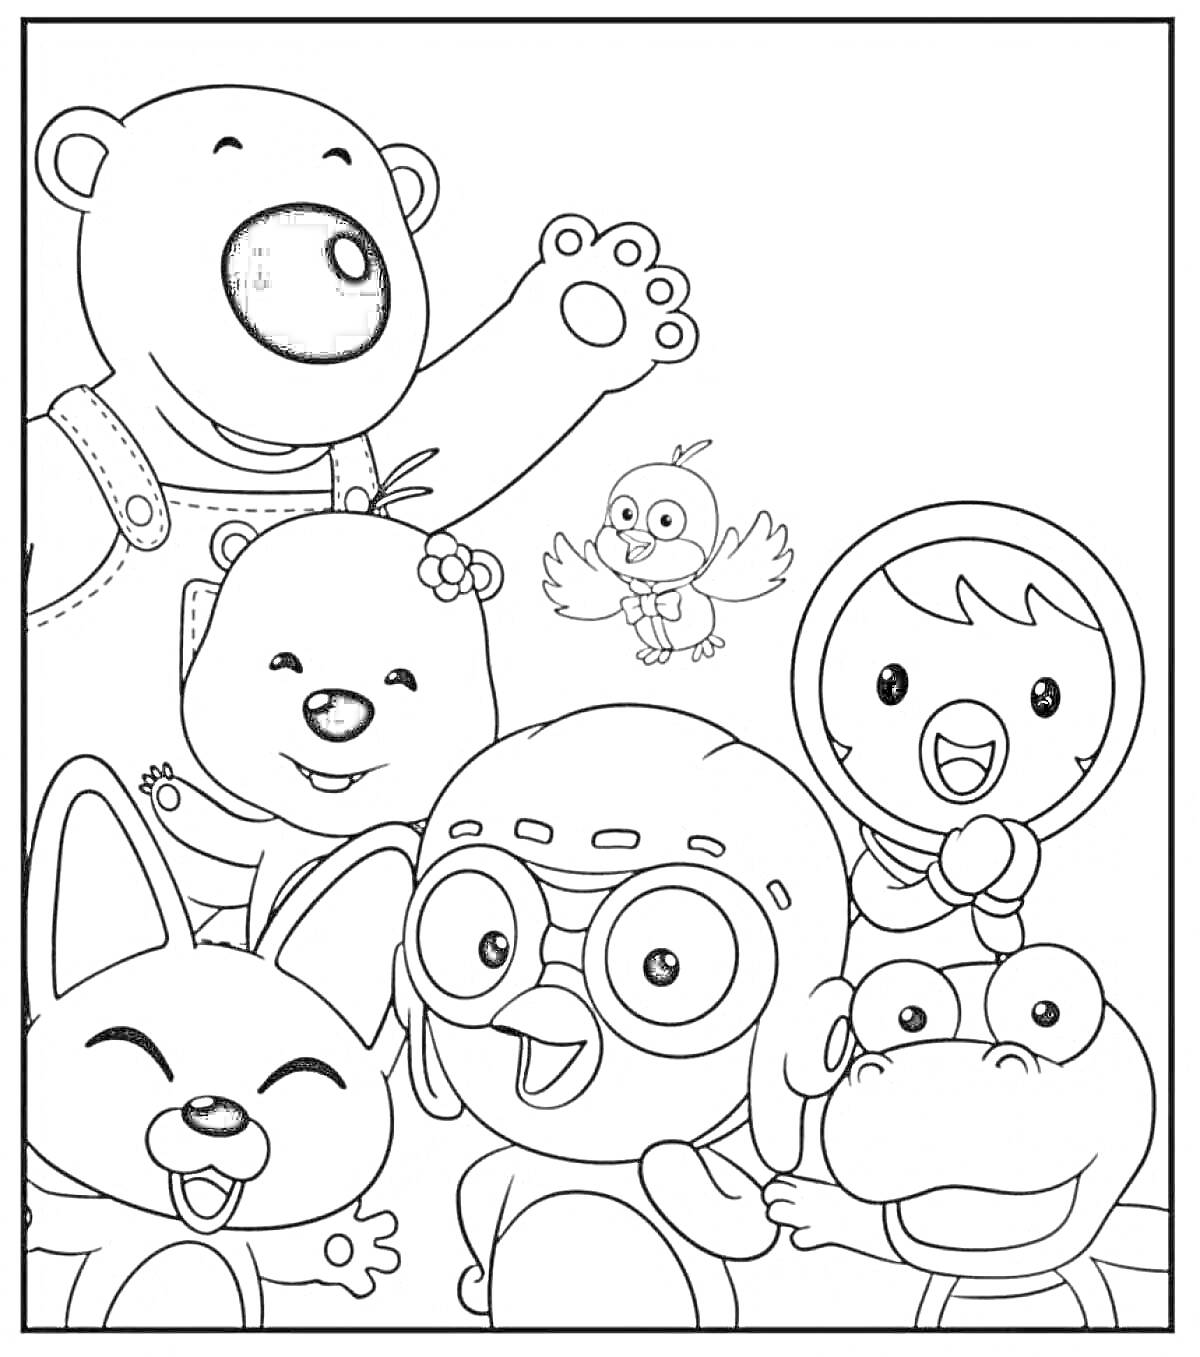 Раскраска Персонажи анимационного сериала с медведем, пингвином в очках, лягушкой, лисенком, птицей и девочкой в капюшоне.